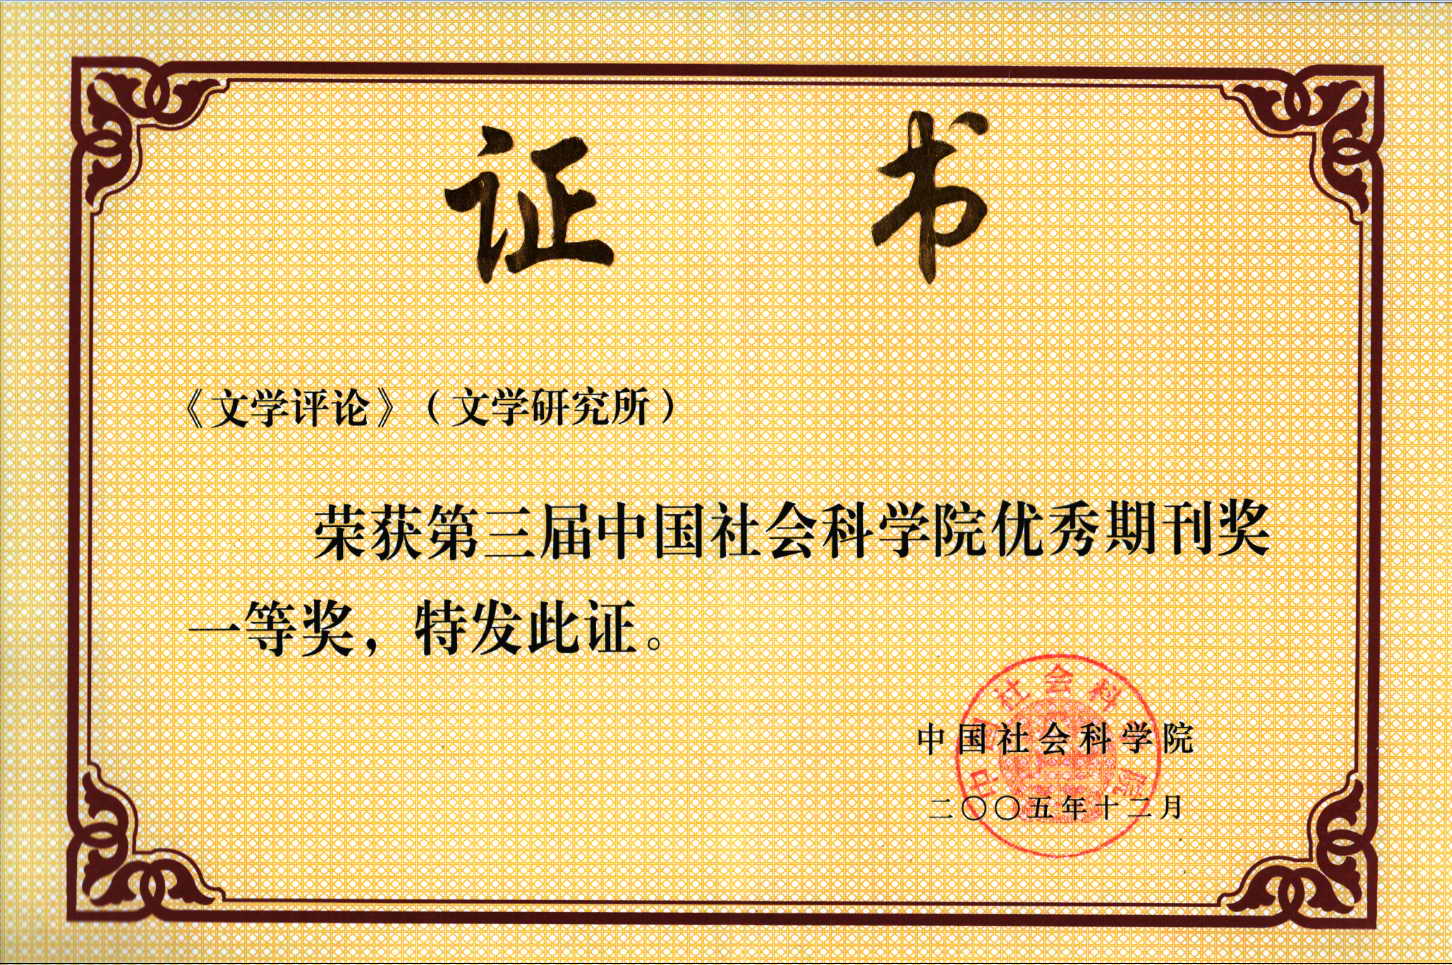 2005中国社会科学院优秀学术期刊一等奖.JPG